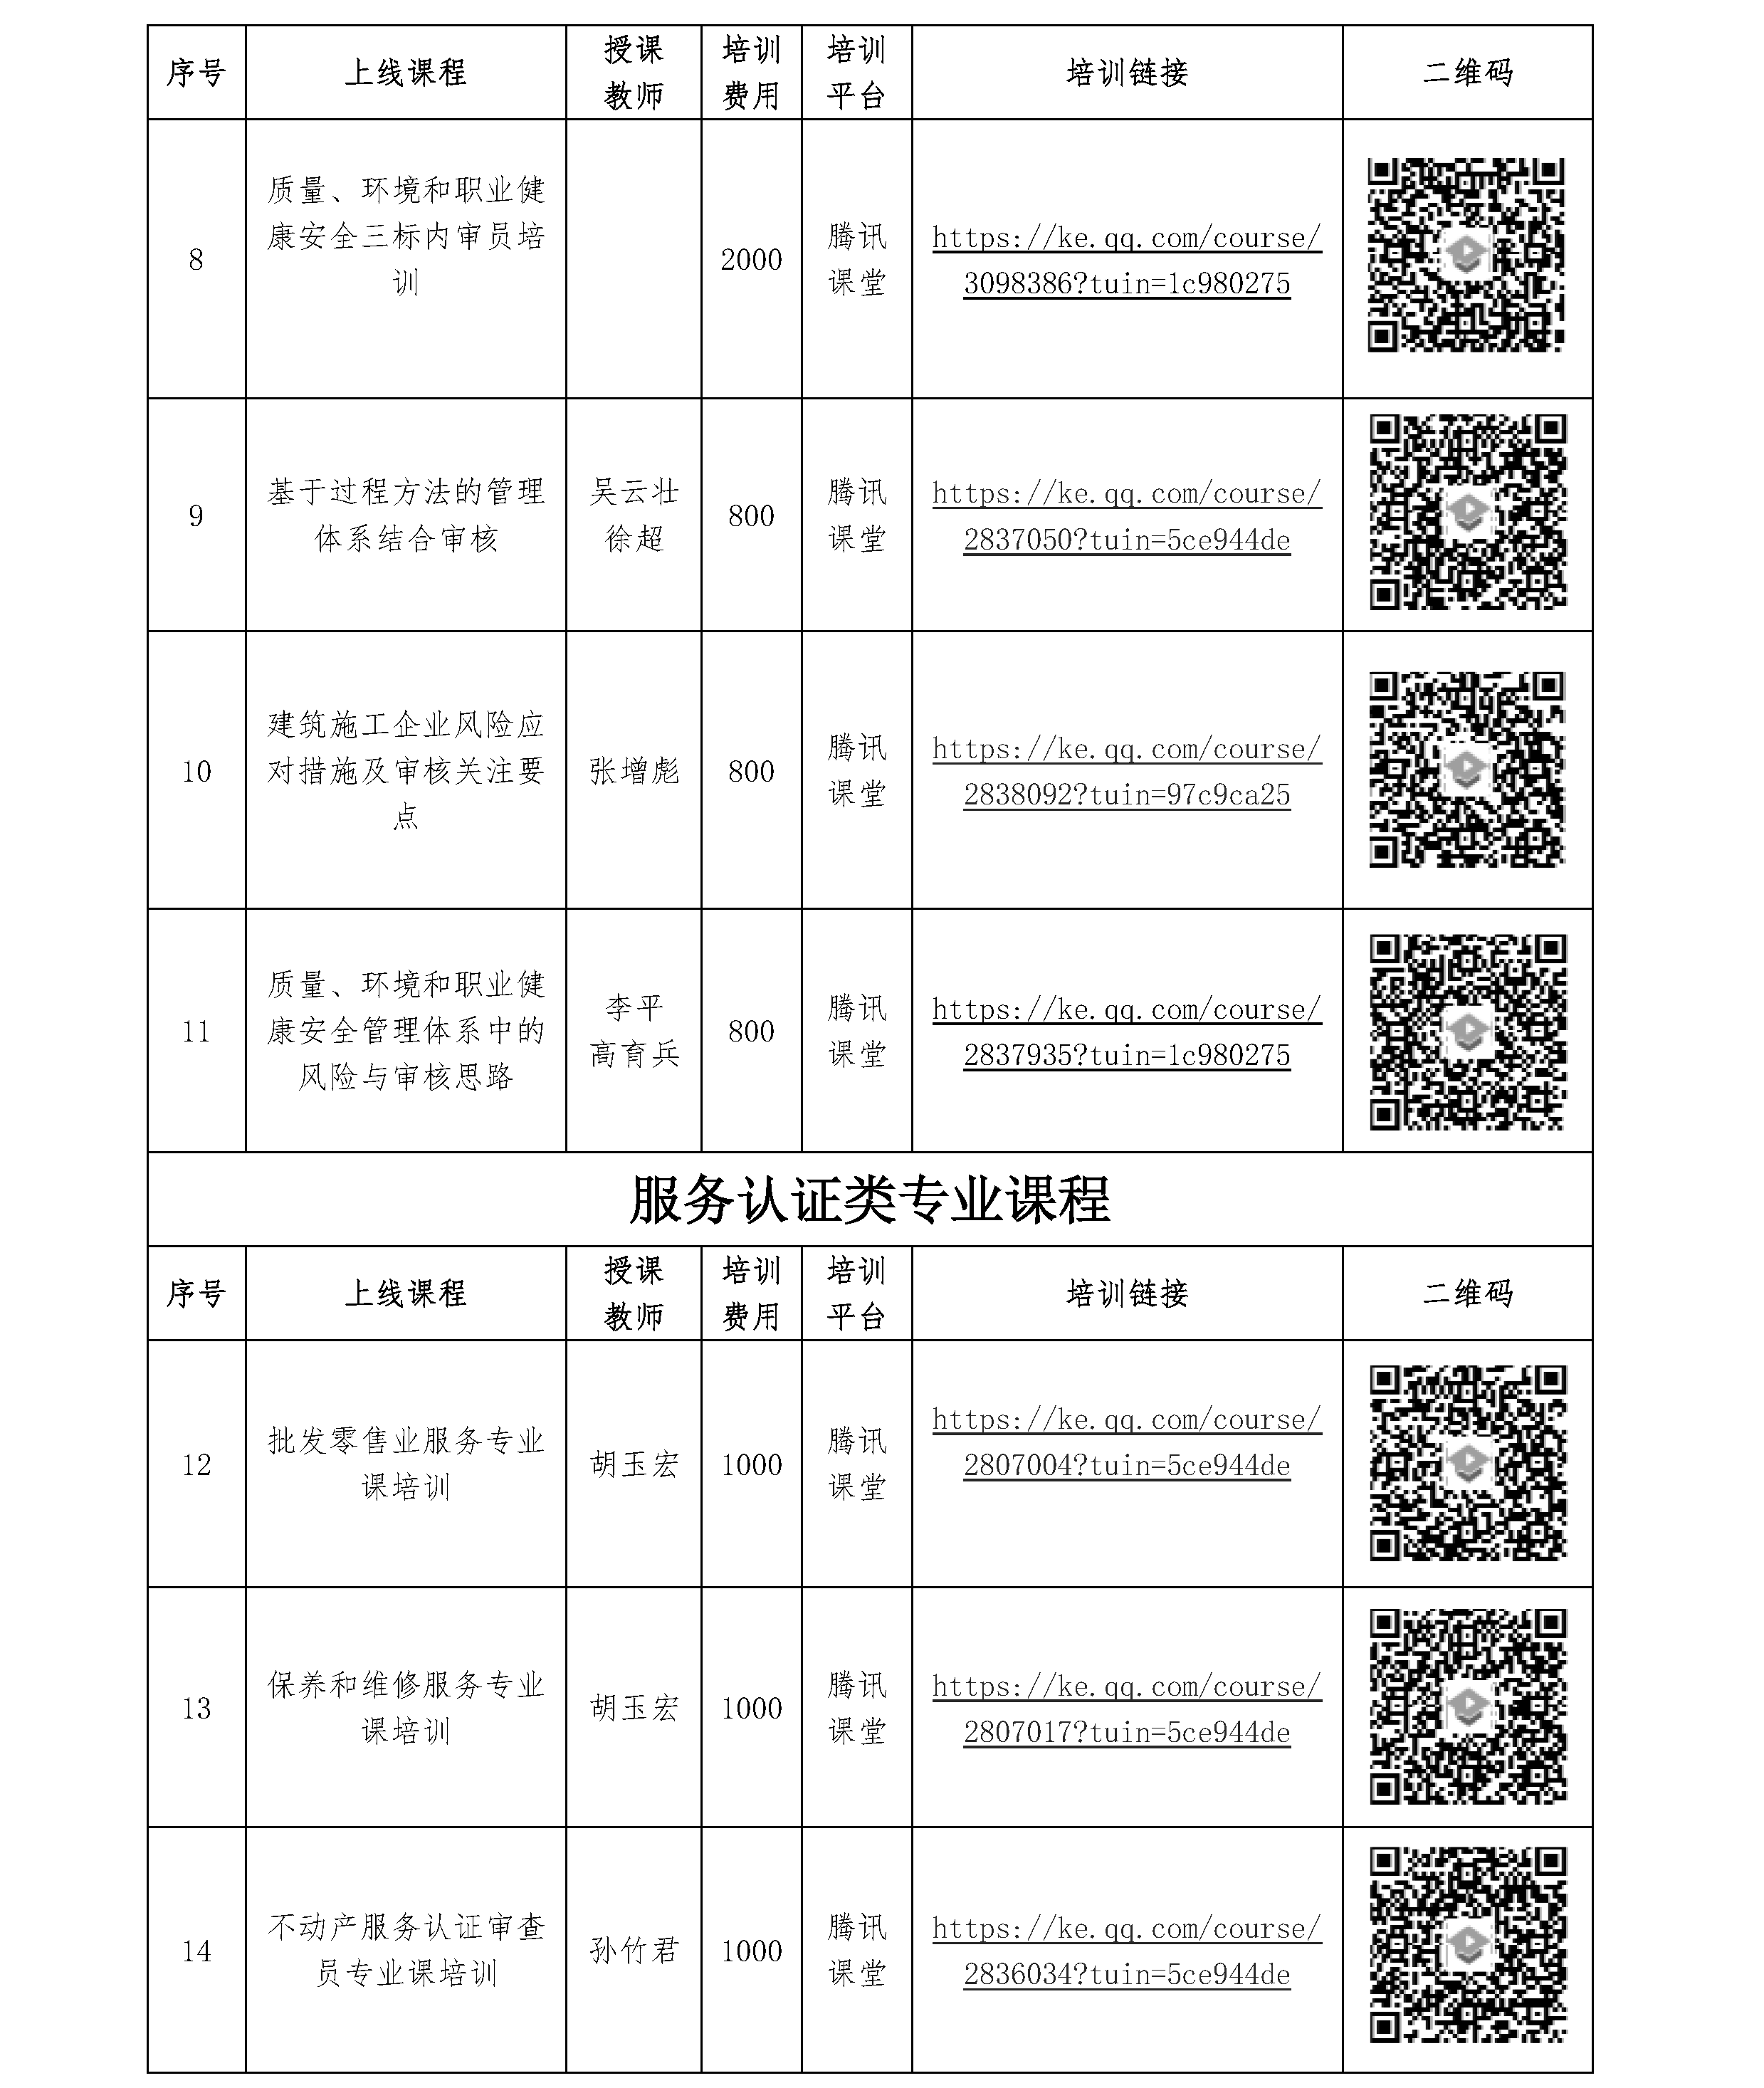 北京世标认证中心有限公司/国培认证培训（北京）中心 2021年一季度培训课程(图2)